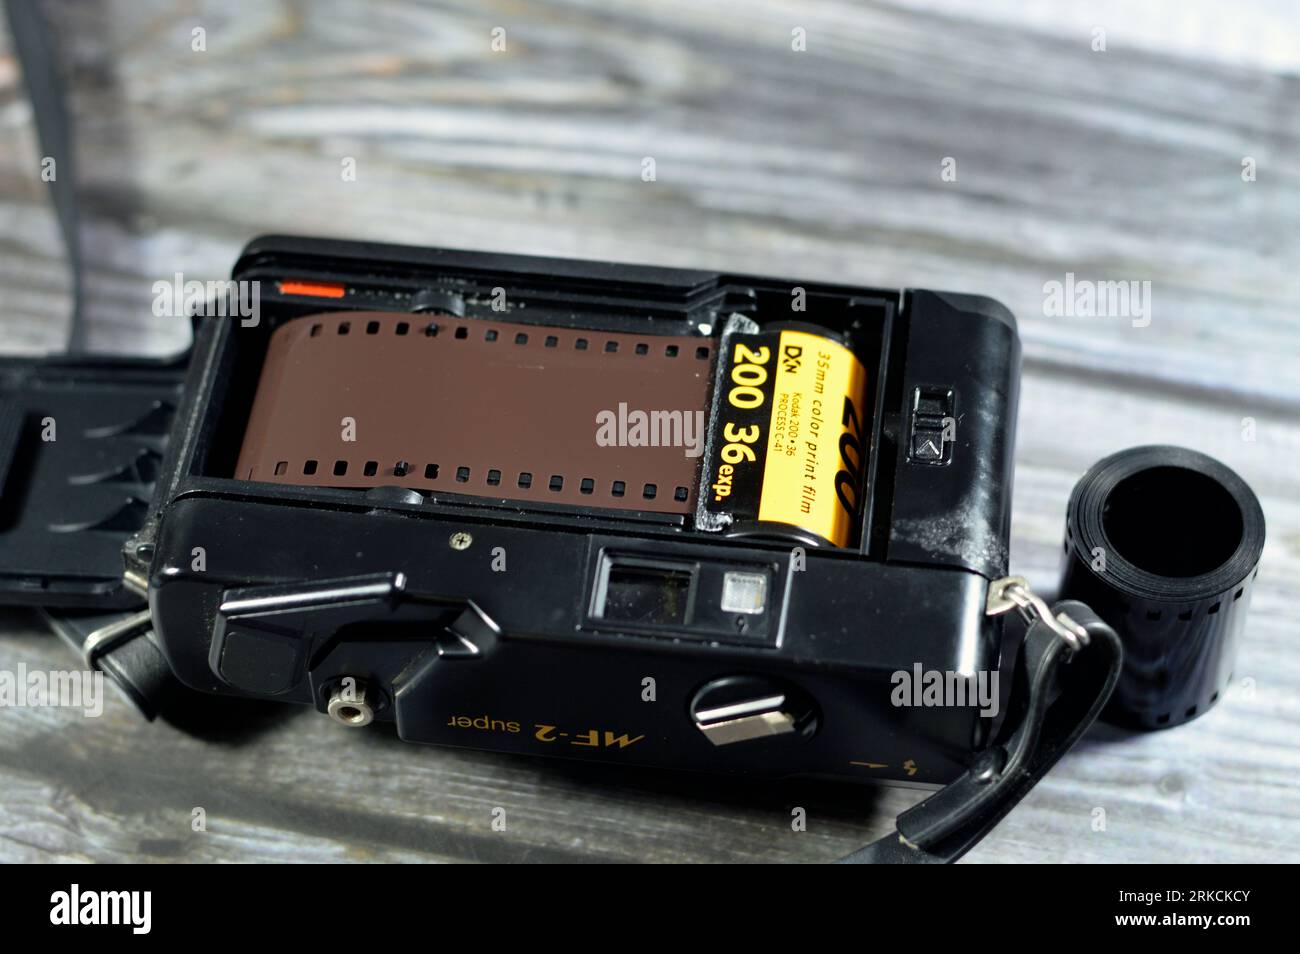 Giza, Ägypten, 12. August 2023: Yashica MF 2 Super wiederverwendbare Filmkamera für 35-mm-Film, integrierter Blitz, automatische DX-Anzeige, Warnung bei schwachem Licht, 38-mm-Objektiv - 3 ELE Stockfoto